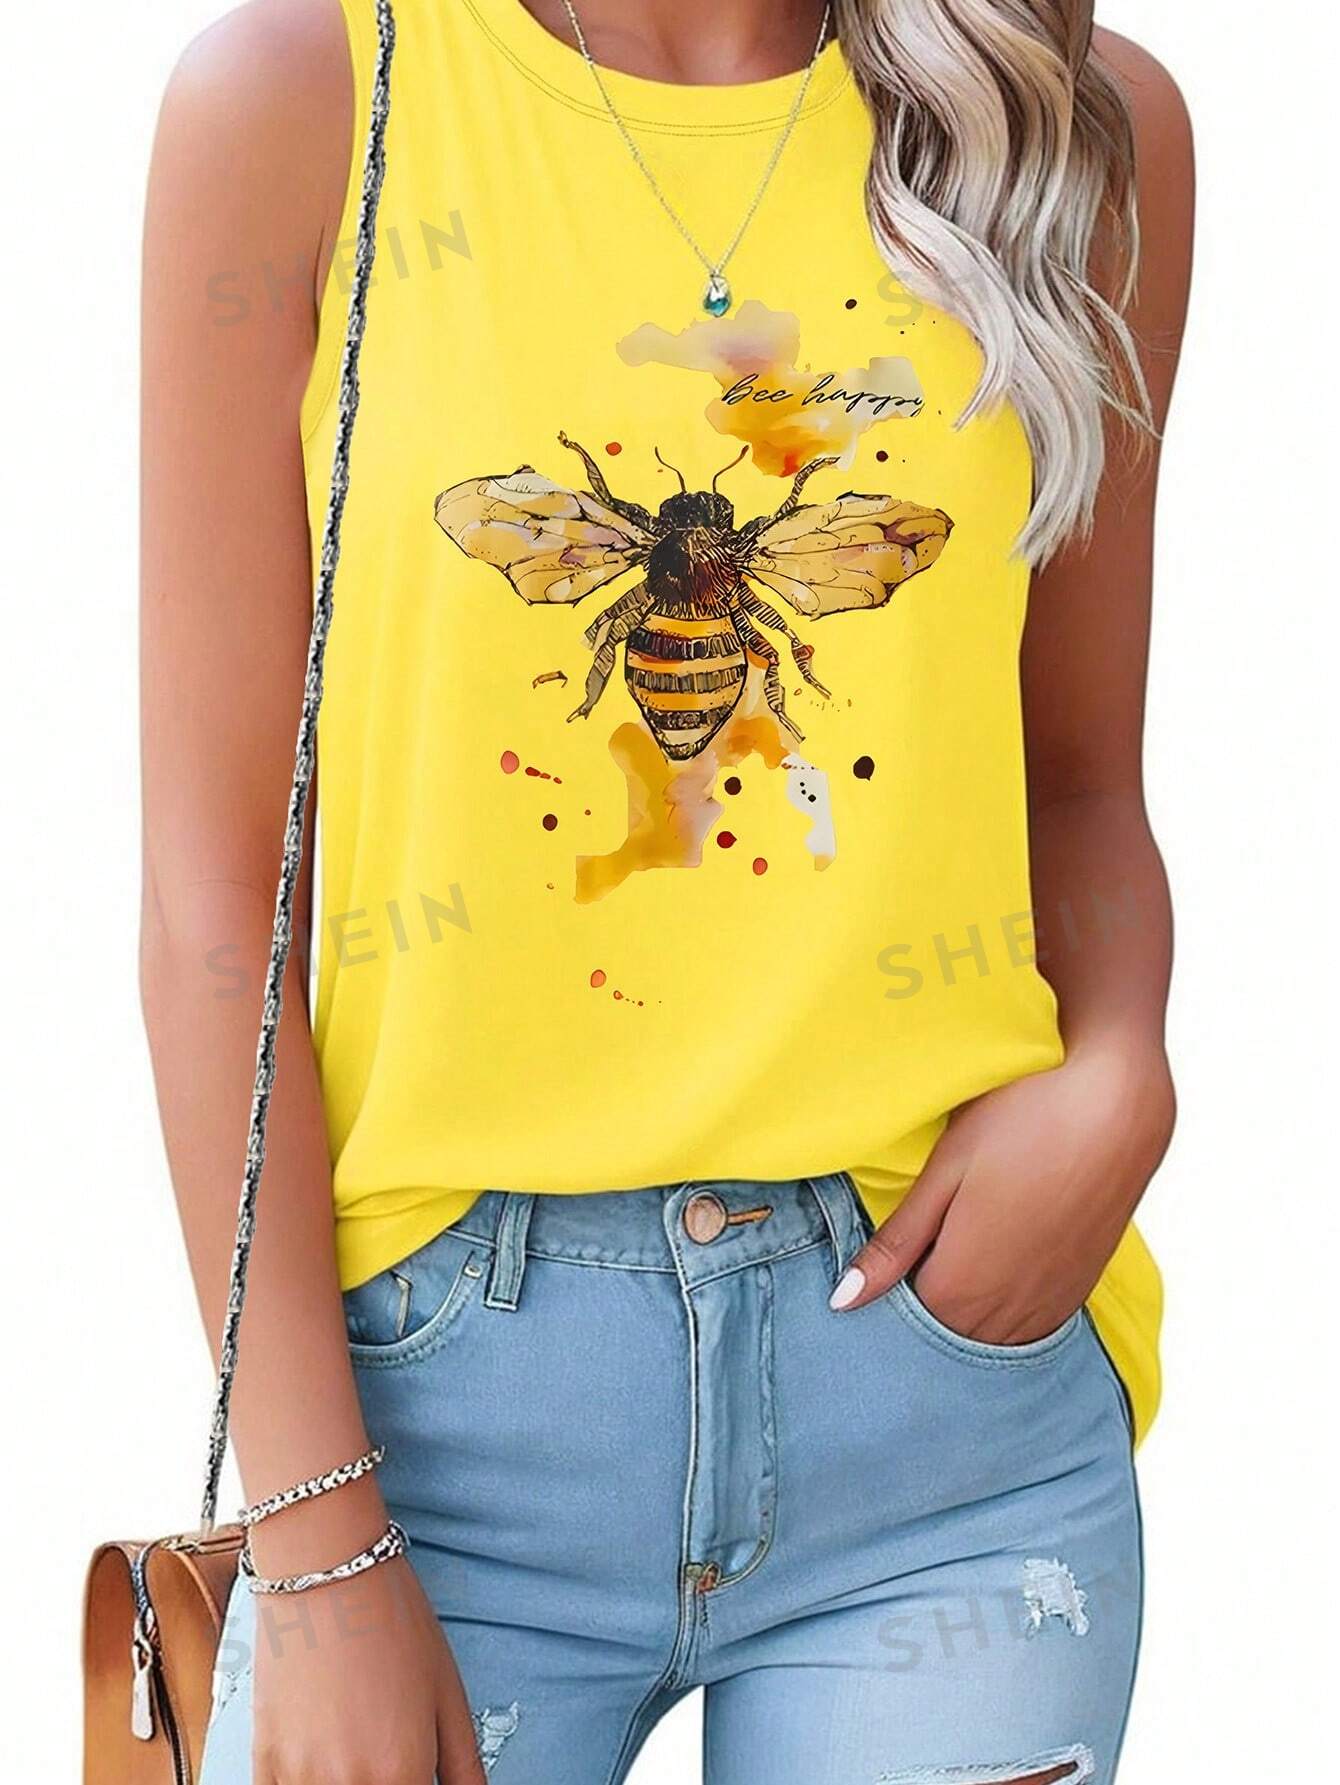 SHEIN LUNE Женская майка с принтом пчел и букв, желтый женский топ без рукавов футболка 2020